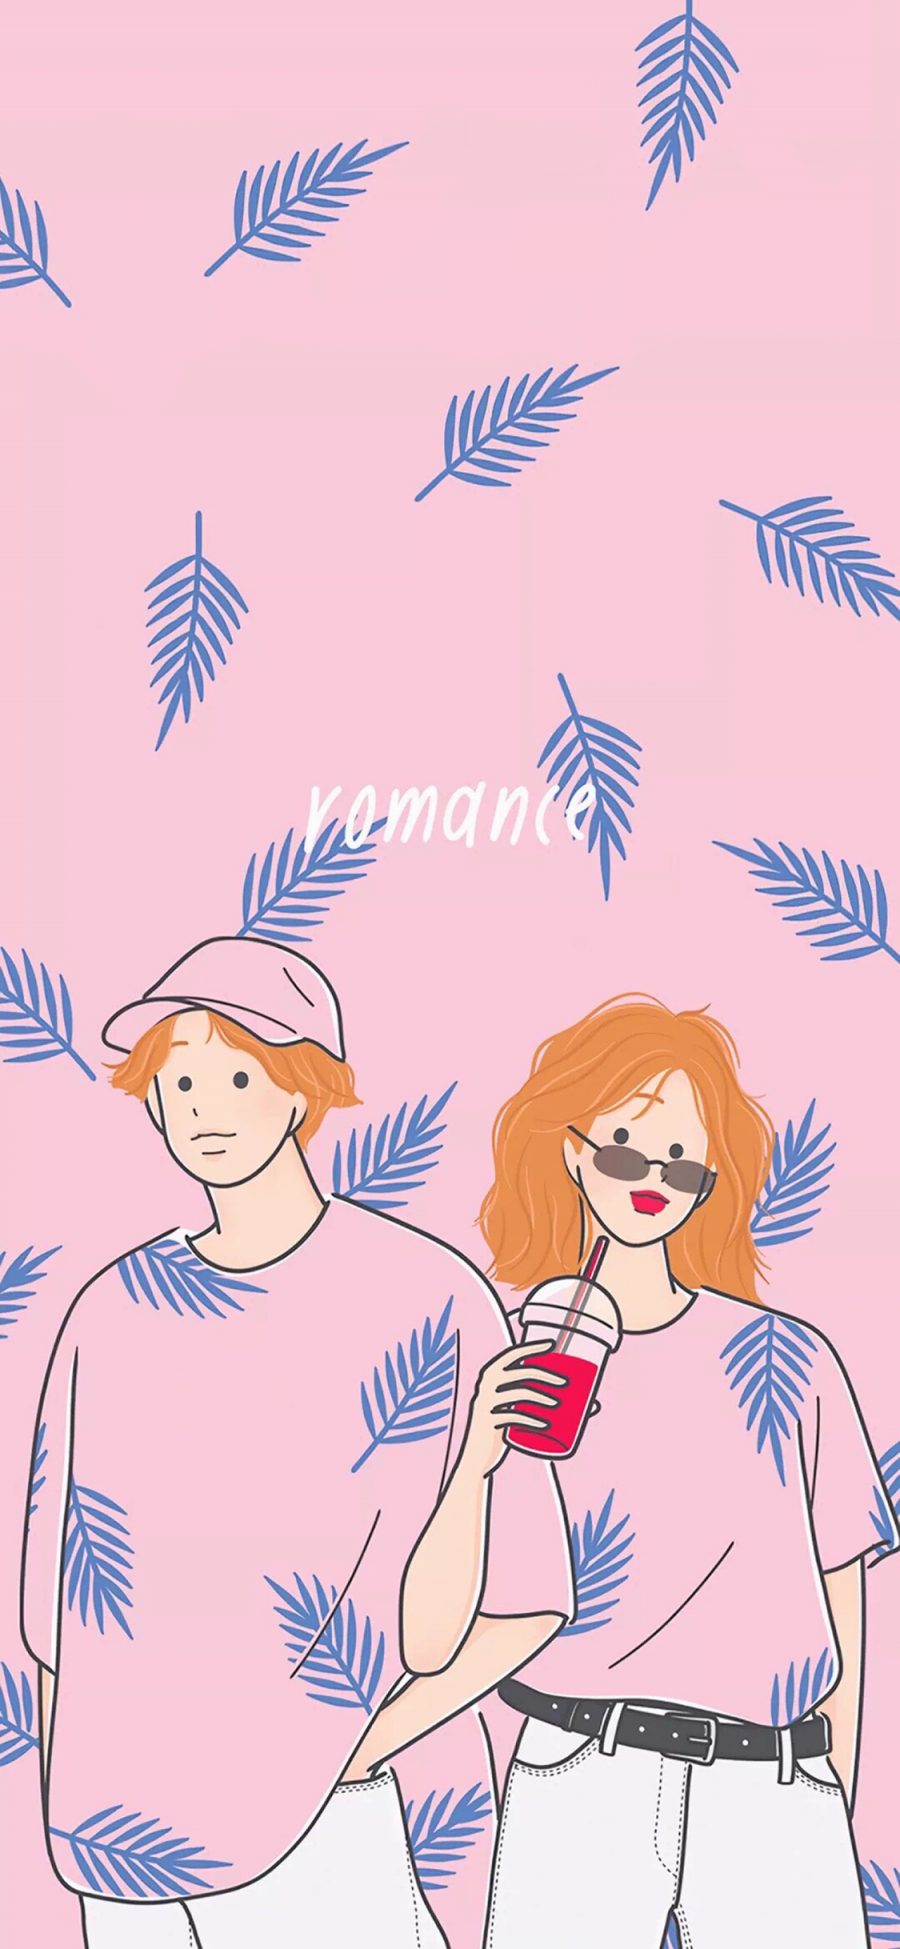 [2436×1125]情侣 插图 粉色 ins风 苹果手机动漫壁纸图片